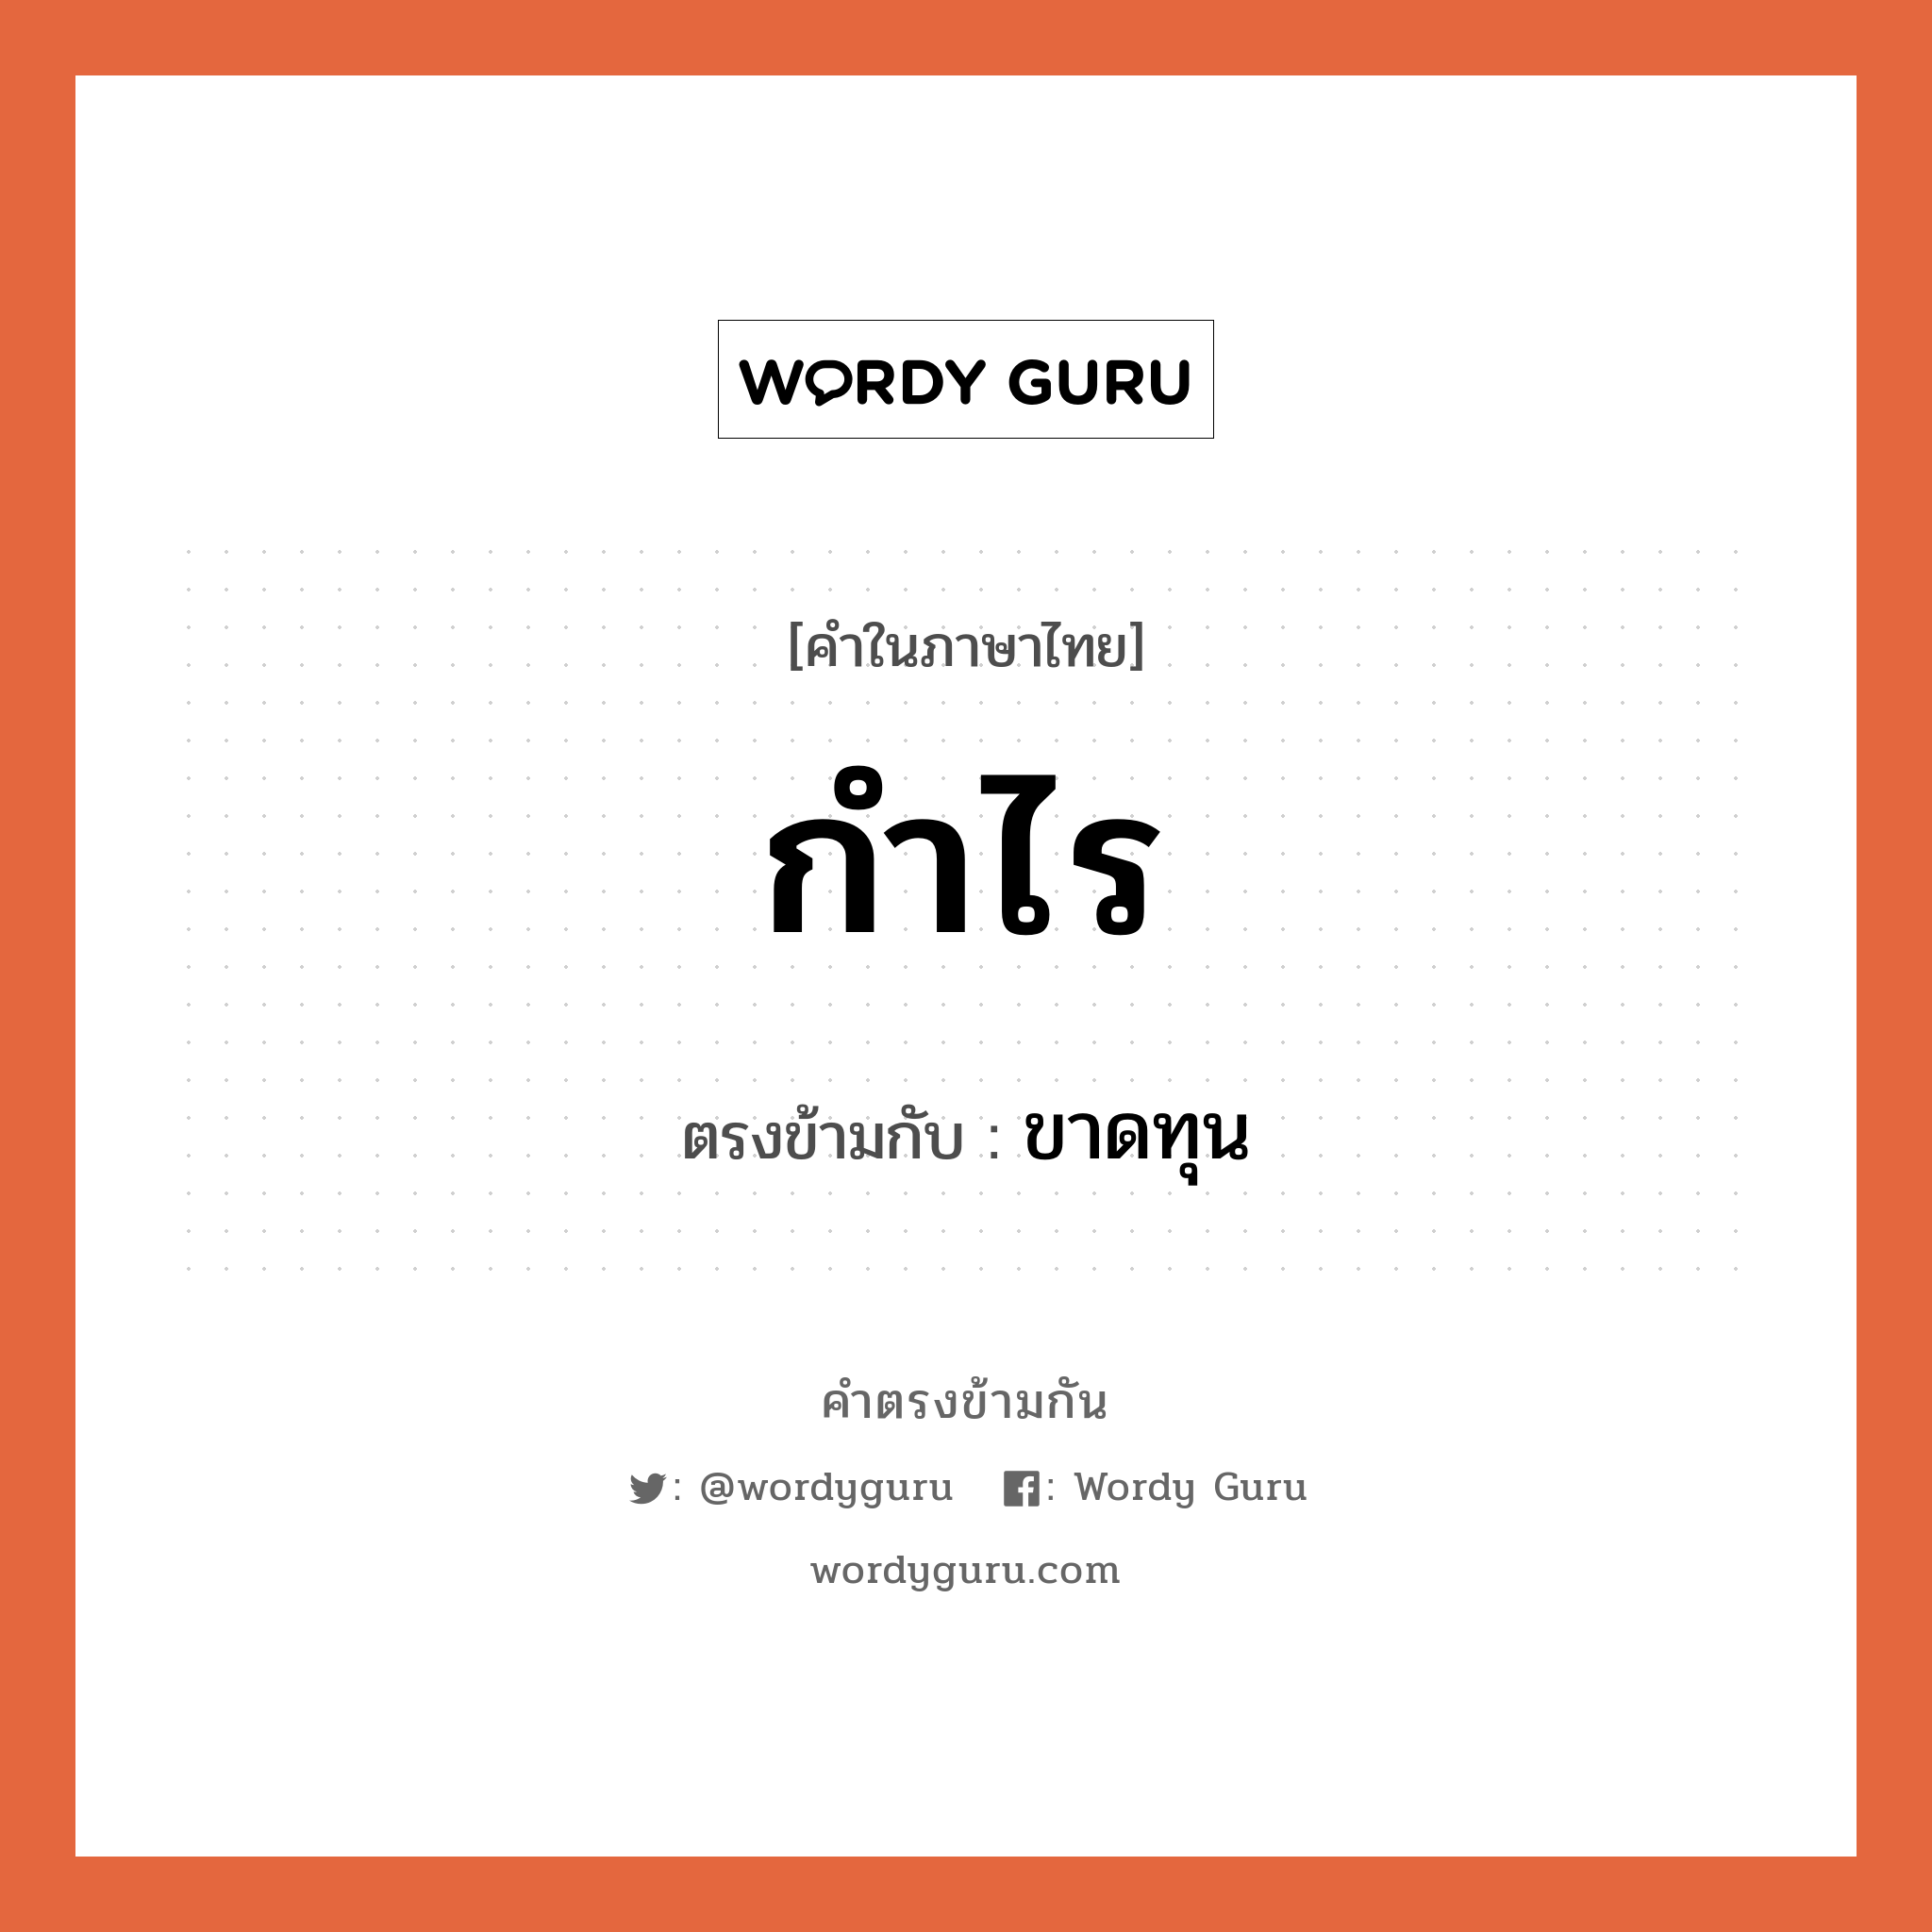 กำไร เป็นคำตรงข้ามกับคำไหนบ้าง? เป็นหนึ่งในคำตรงข้ามของ ขาดทุน, คำในภาษาไทย กำไร ตรงข้ามกับ ขาดทุน หมวด ขาดทุน